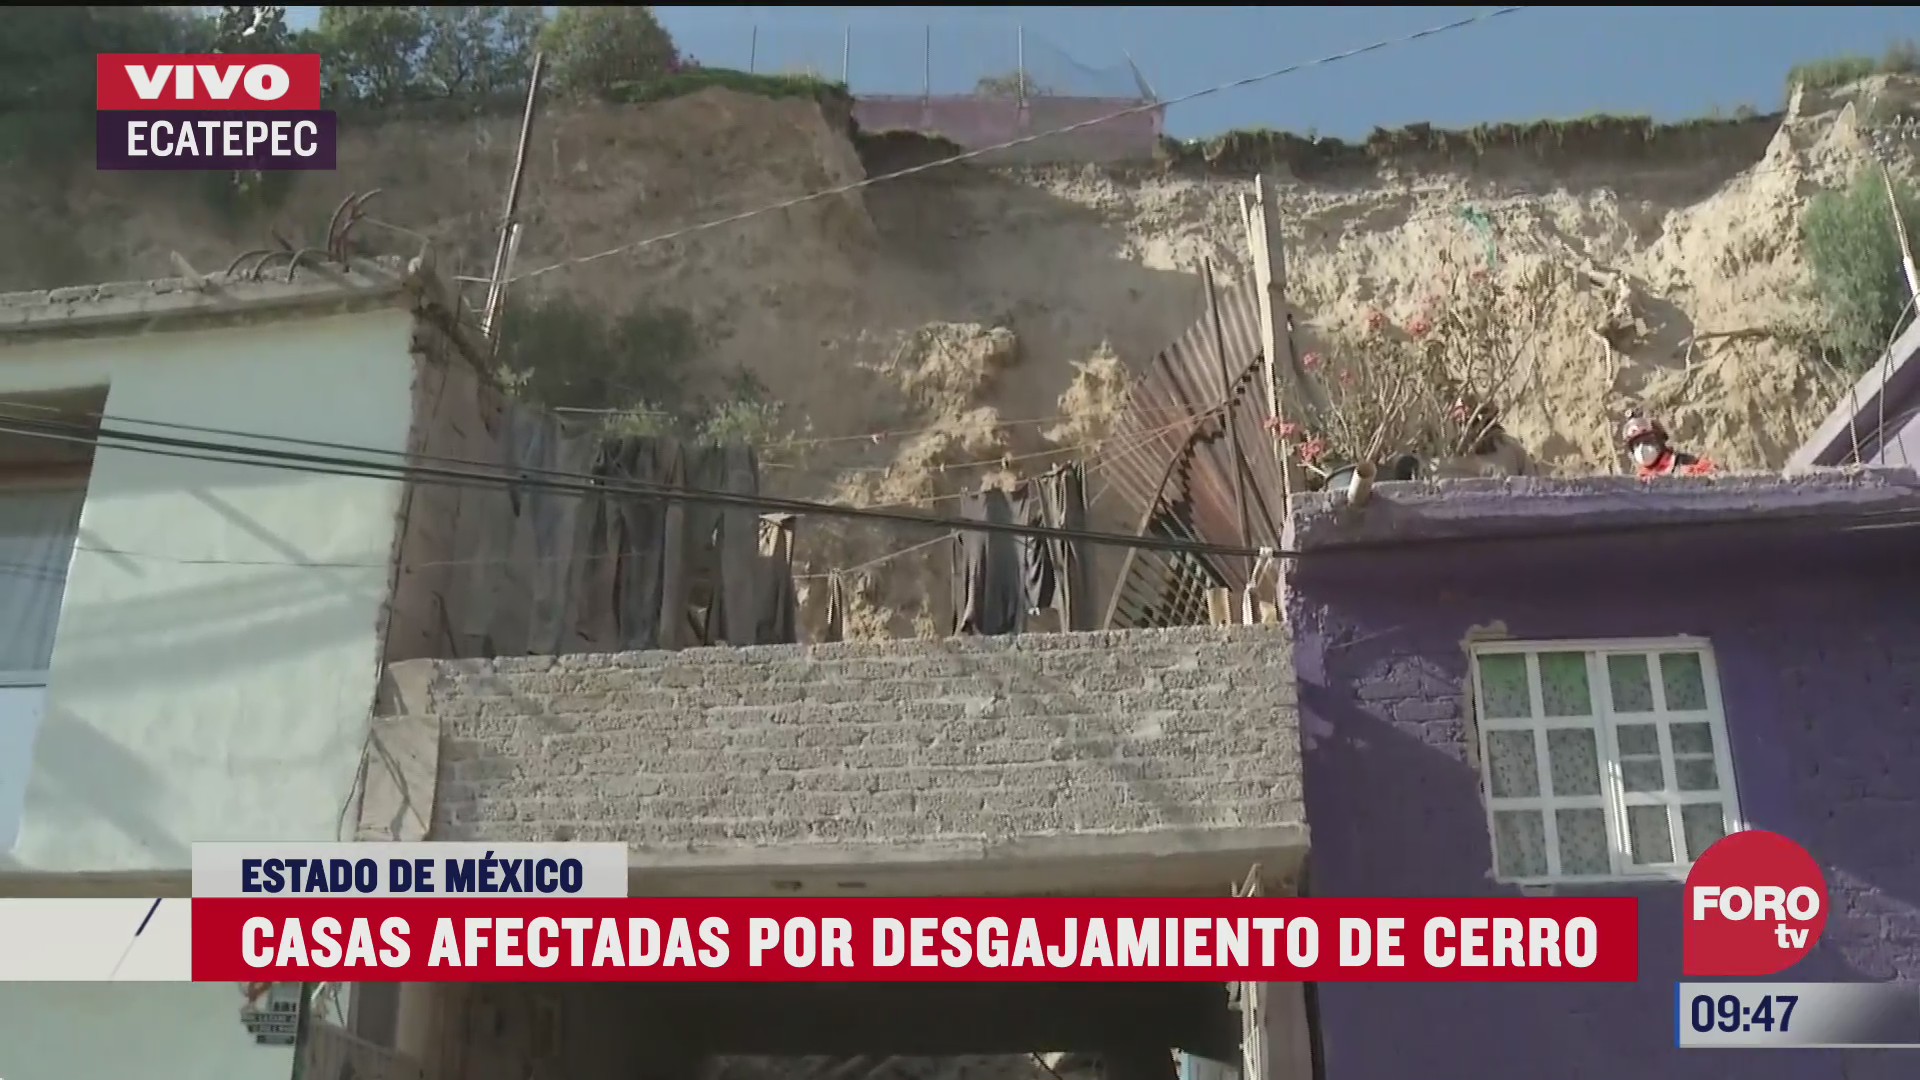 casas afectadas por derrumbe de cerro en ecatepec edomex